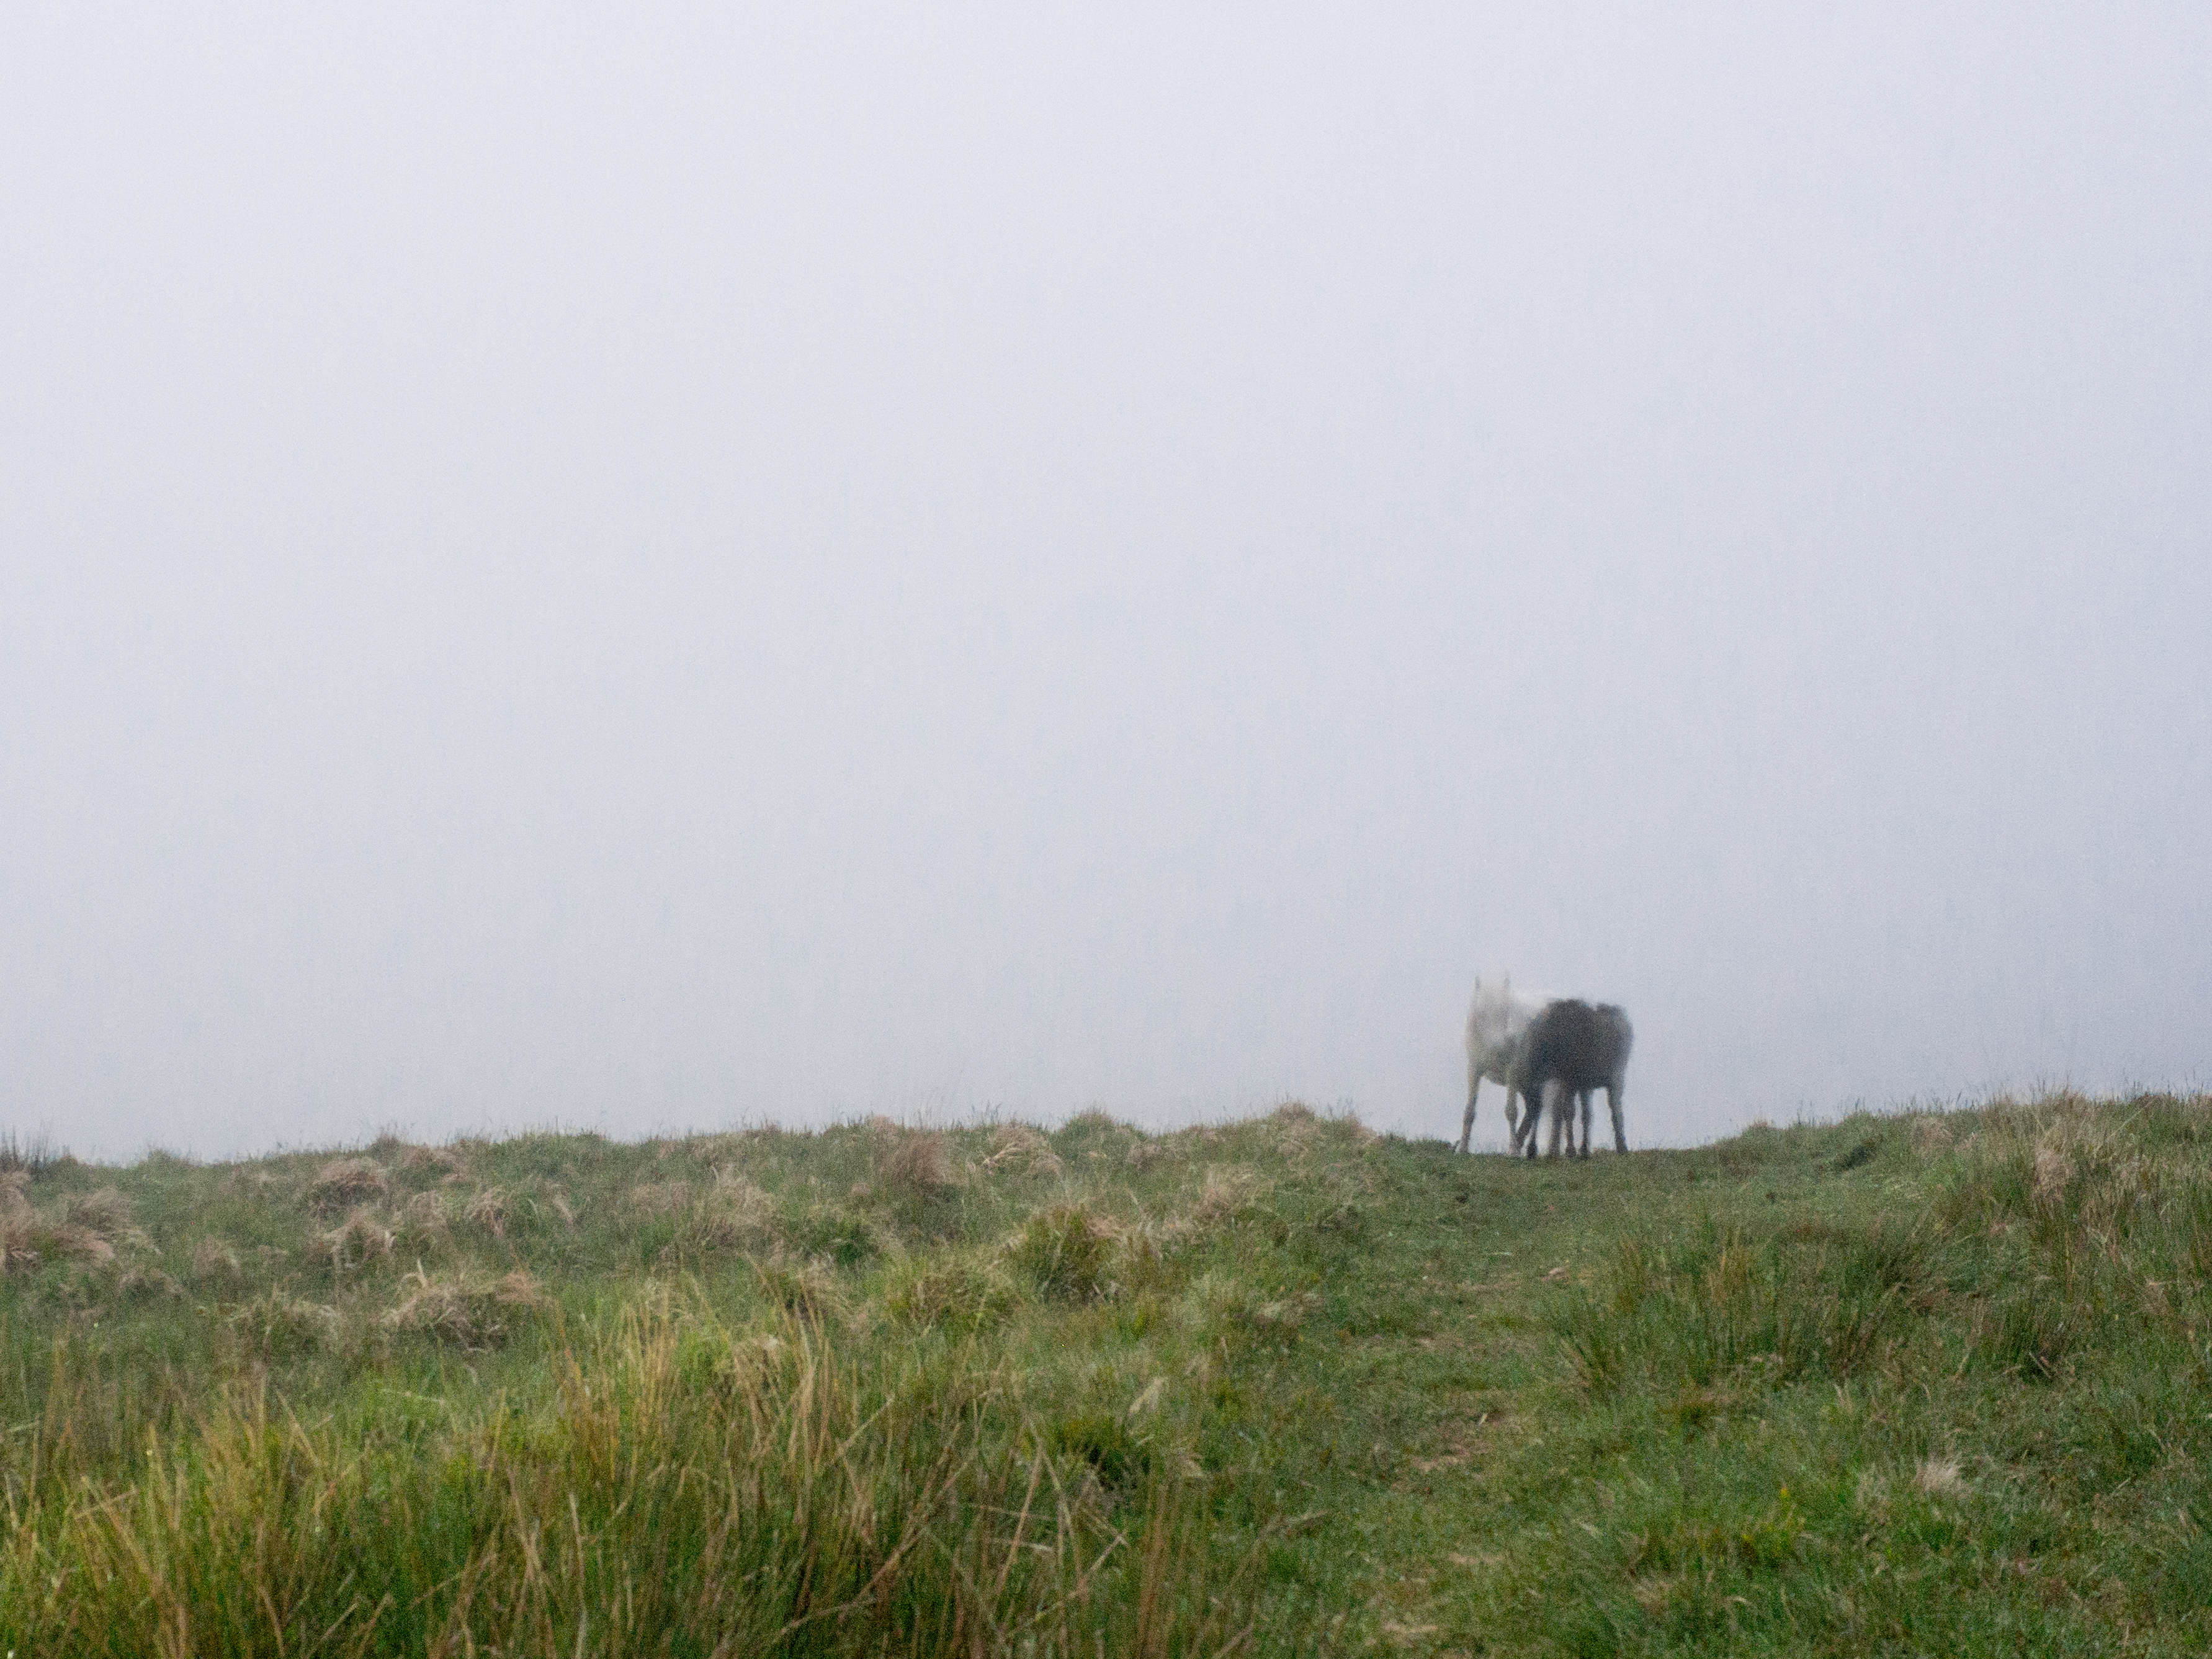 The Dartmoor Ponies